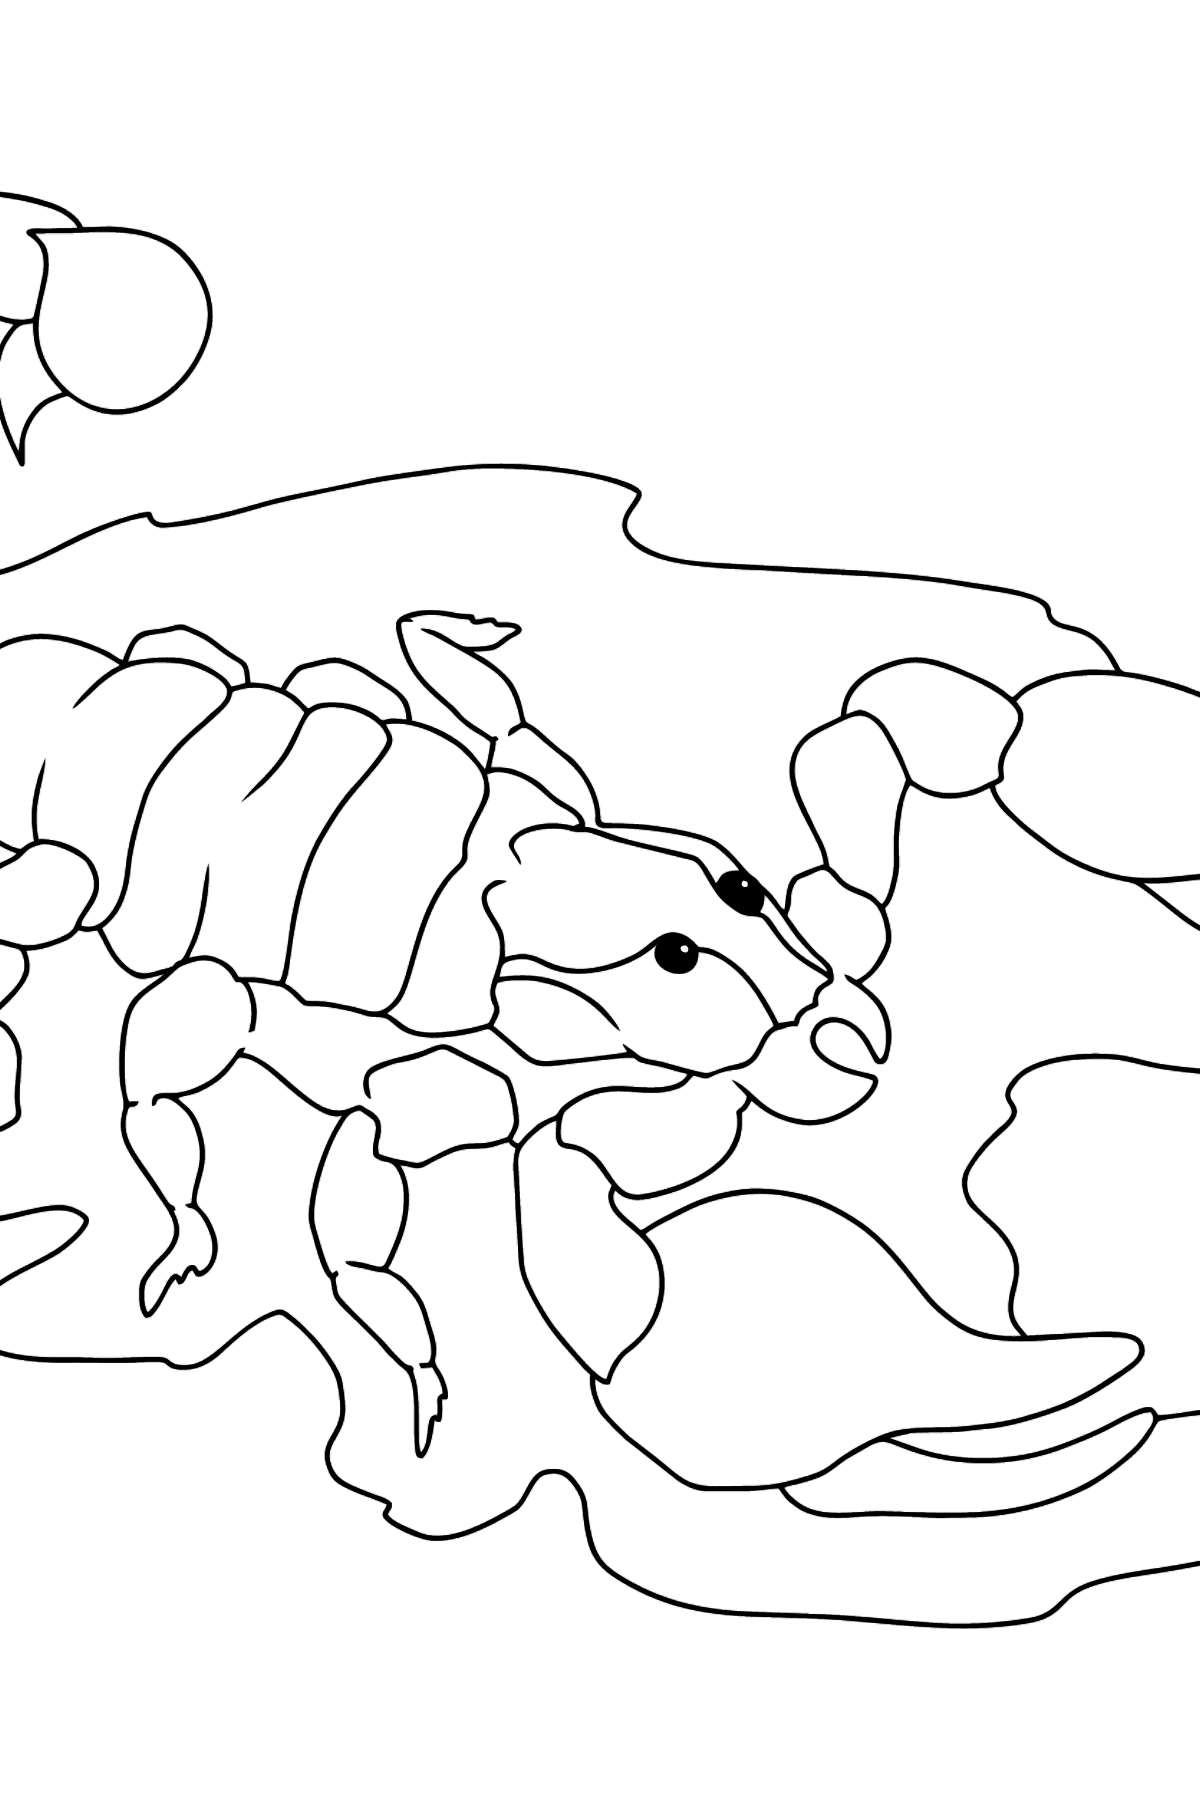 Disegno di Scorpione nero da colorare - Disegni da colorare per bambini